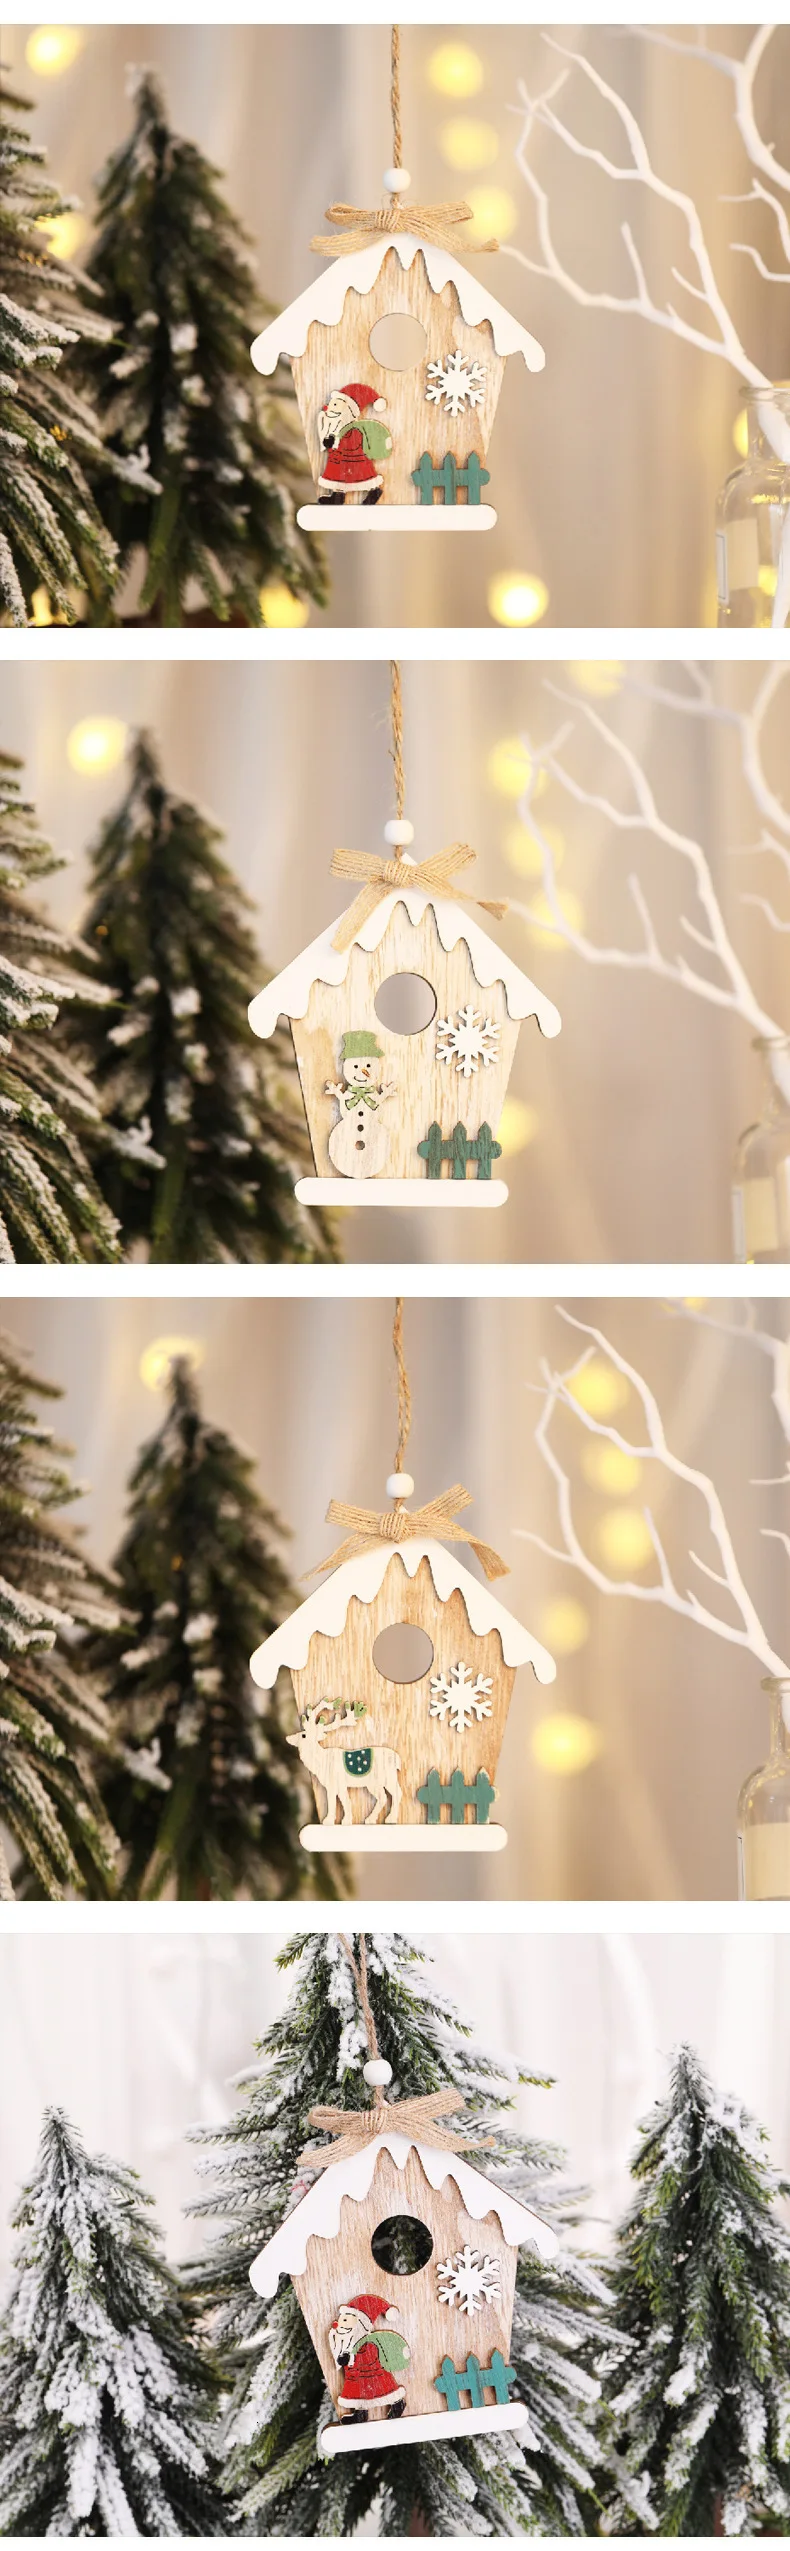 1 шт., деревянная новогодняя елка с изображением Санта-Клауса, лося, подвески, подвесные украшения на Рождество, Год, товары для декора, вечерние украшения для дома, 62724